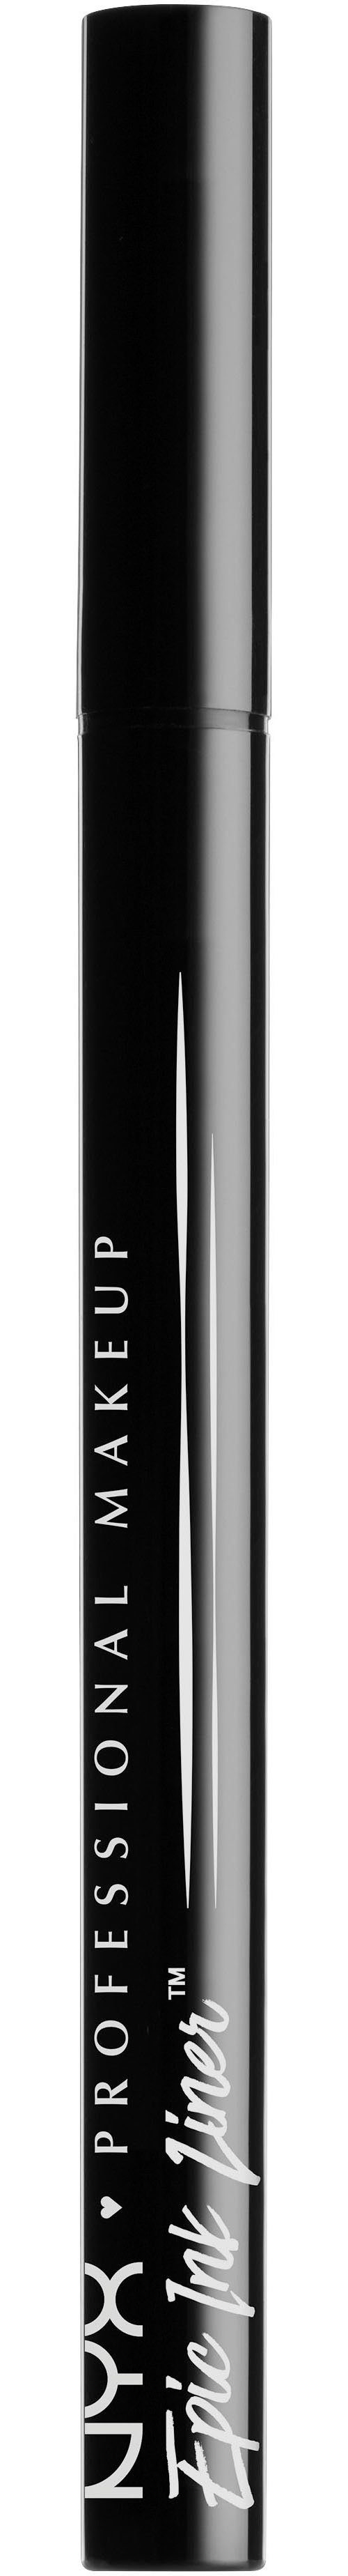 Ink Black Professional Makeup Epic NYX Eyeliner Liner EIL01